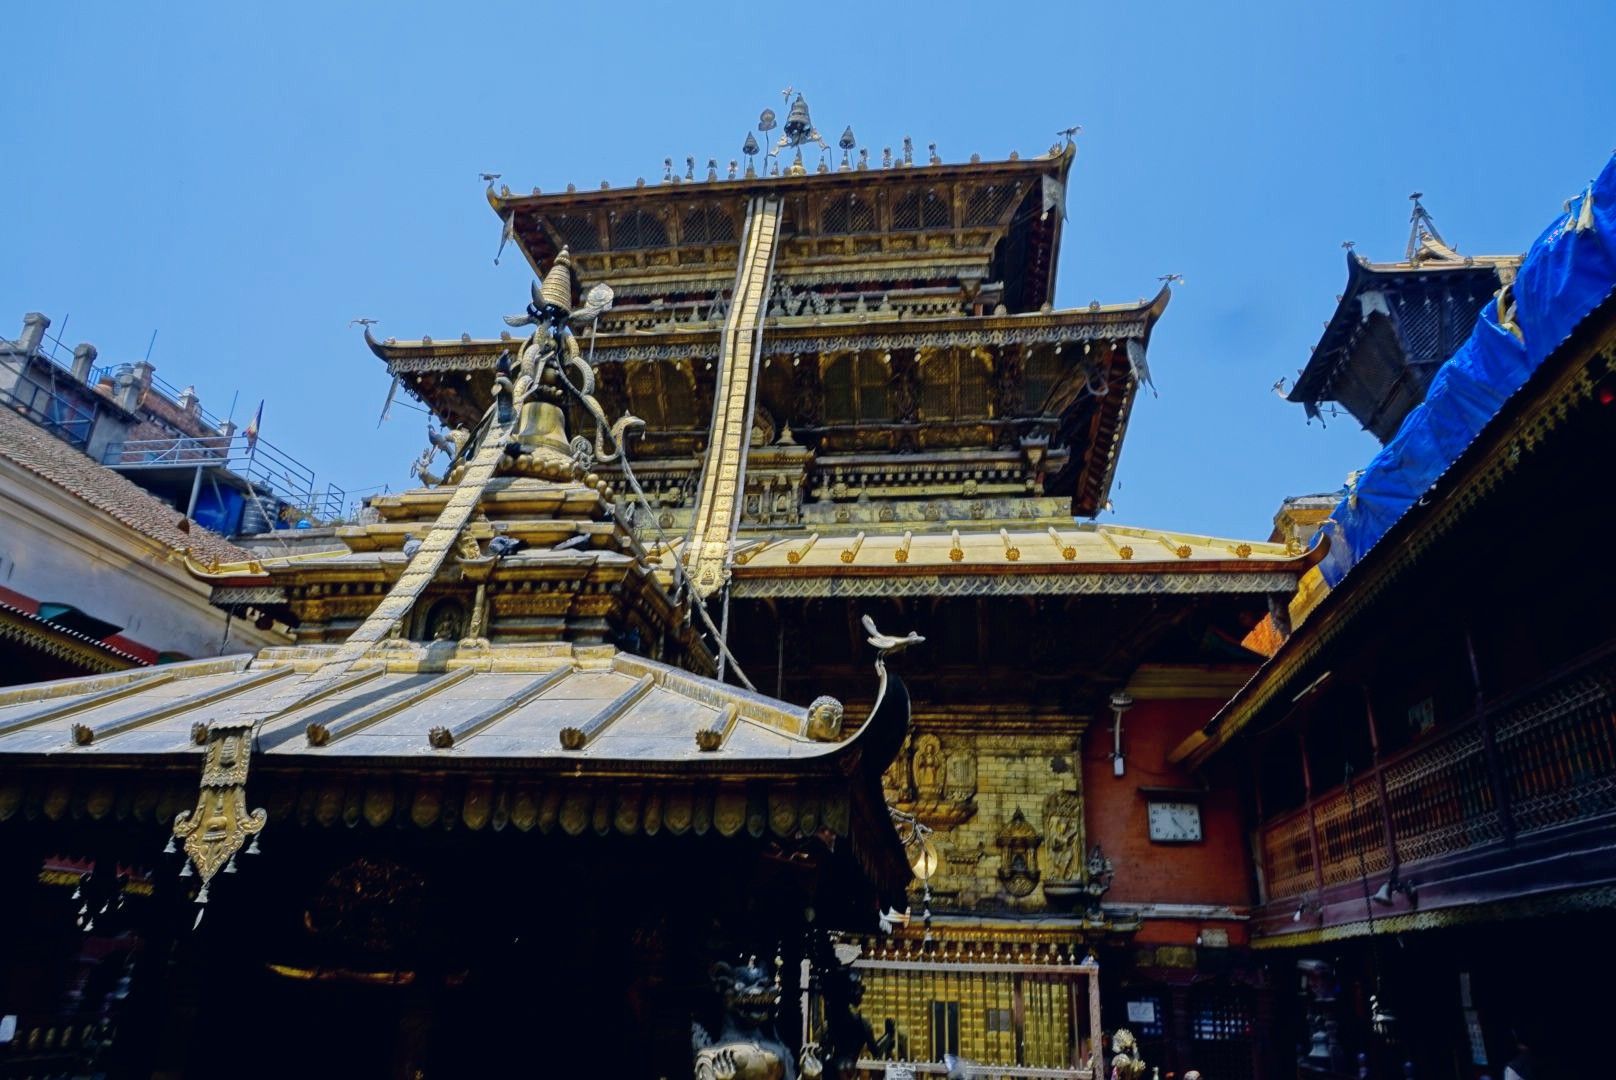 帕坦古城里居住着尼泊尔最古老的民族一一尼瓦尔人，他们有世代相传精湛手工艺，以打造金银铜器，石雕木刻，